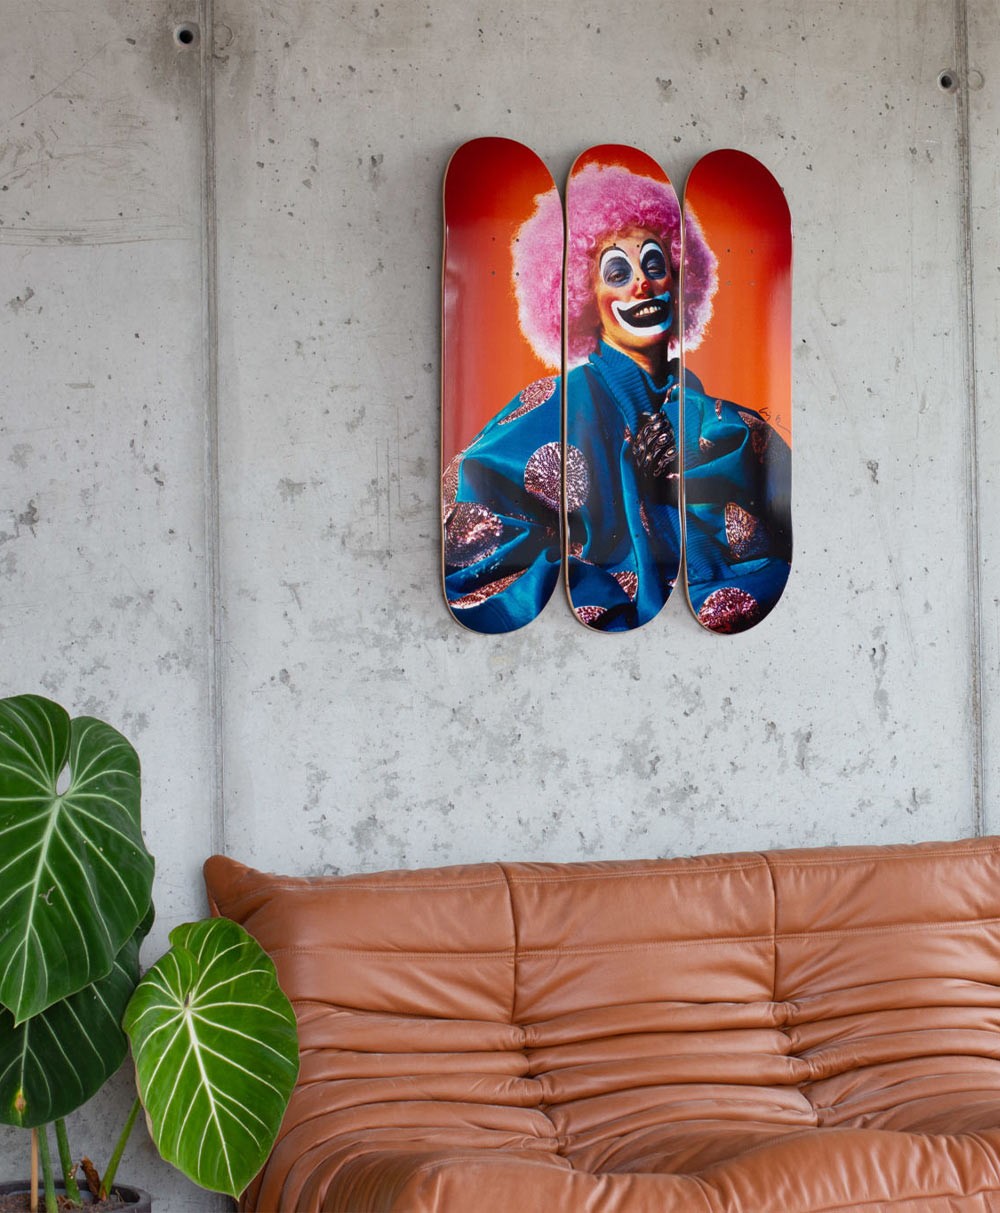 Moodbild "Clown" designed by Cindy Sherman von The Skateroom im RAUM Conceptstore